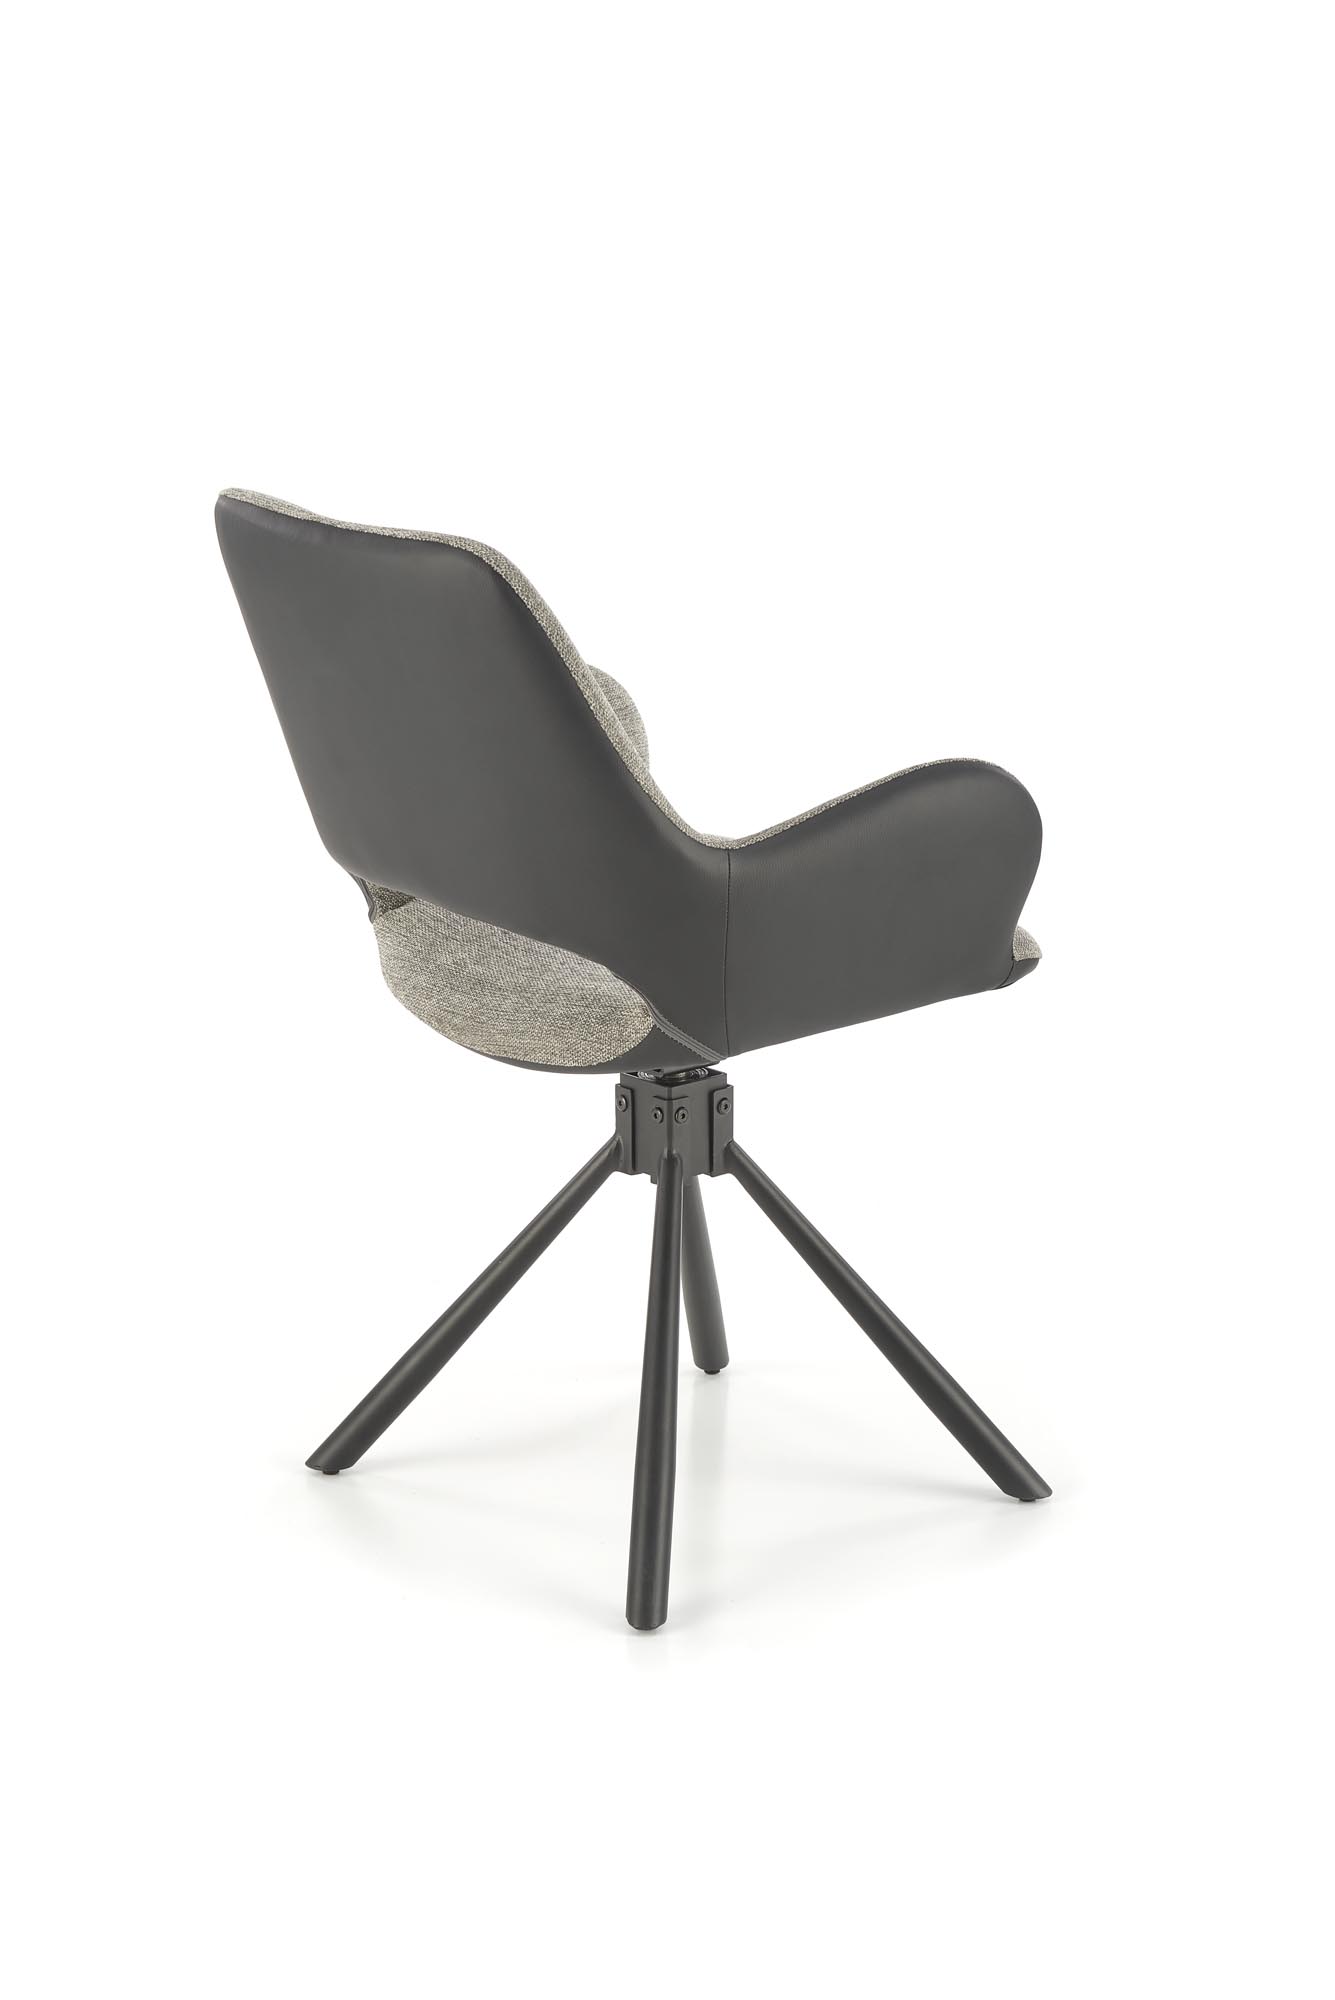 Krzesło tapicerowane z obrotowym siedziskiem K494 - popielaty / czarny krzesło tapicerowane z obrotowym siedziskiem k494 - popielaty / czarny